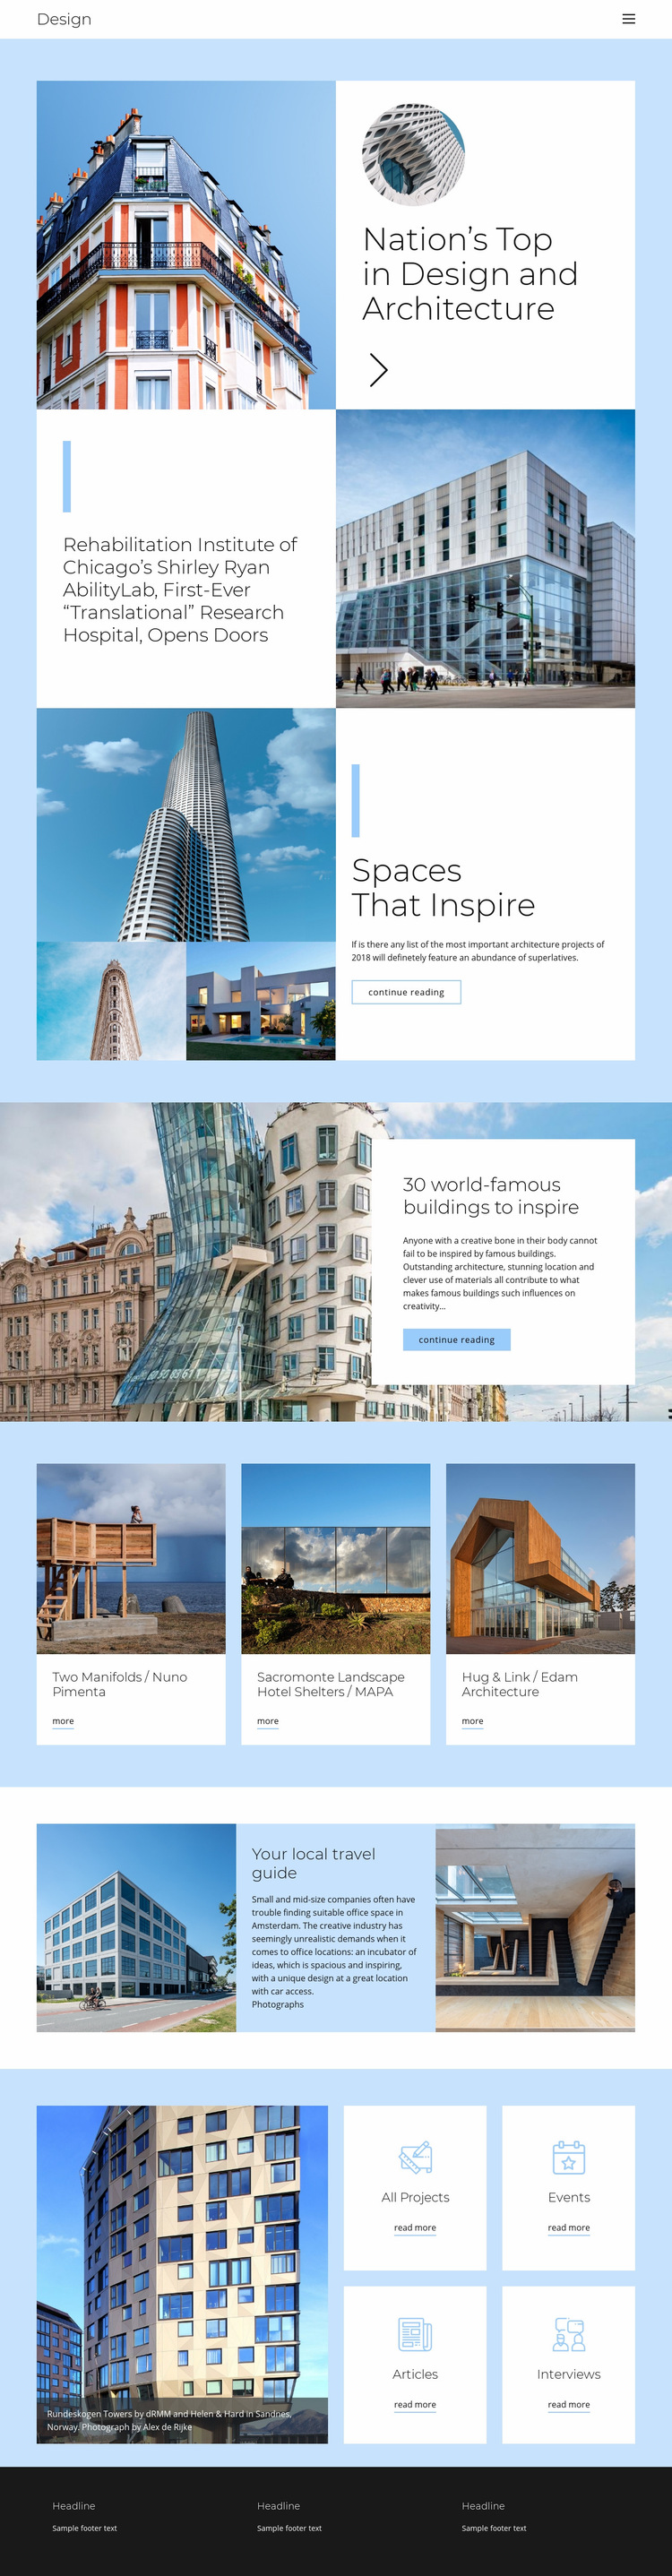 Architecture city guide Web Page Design